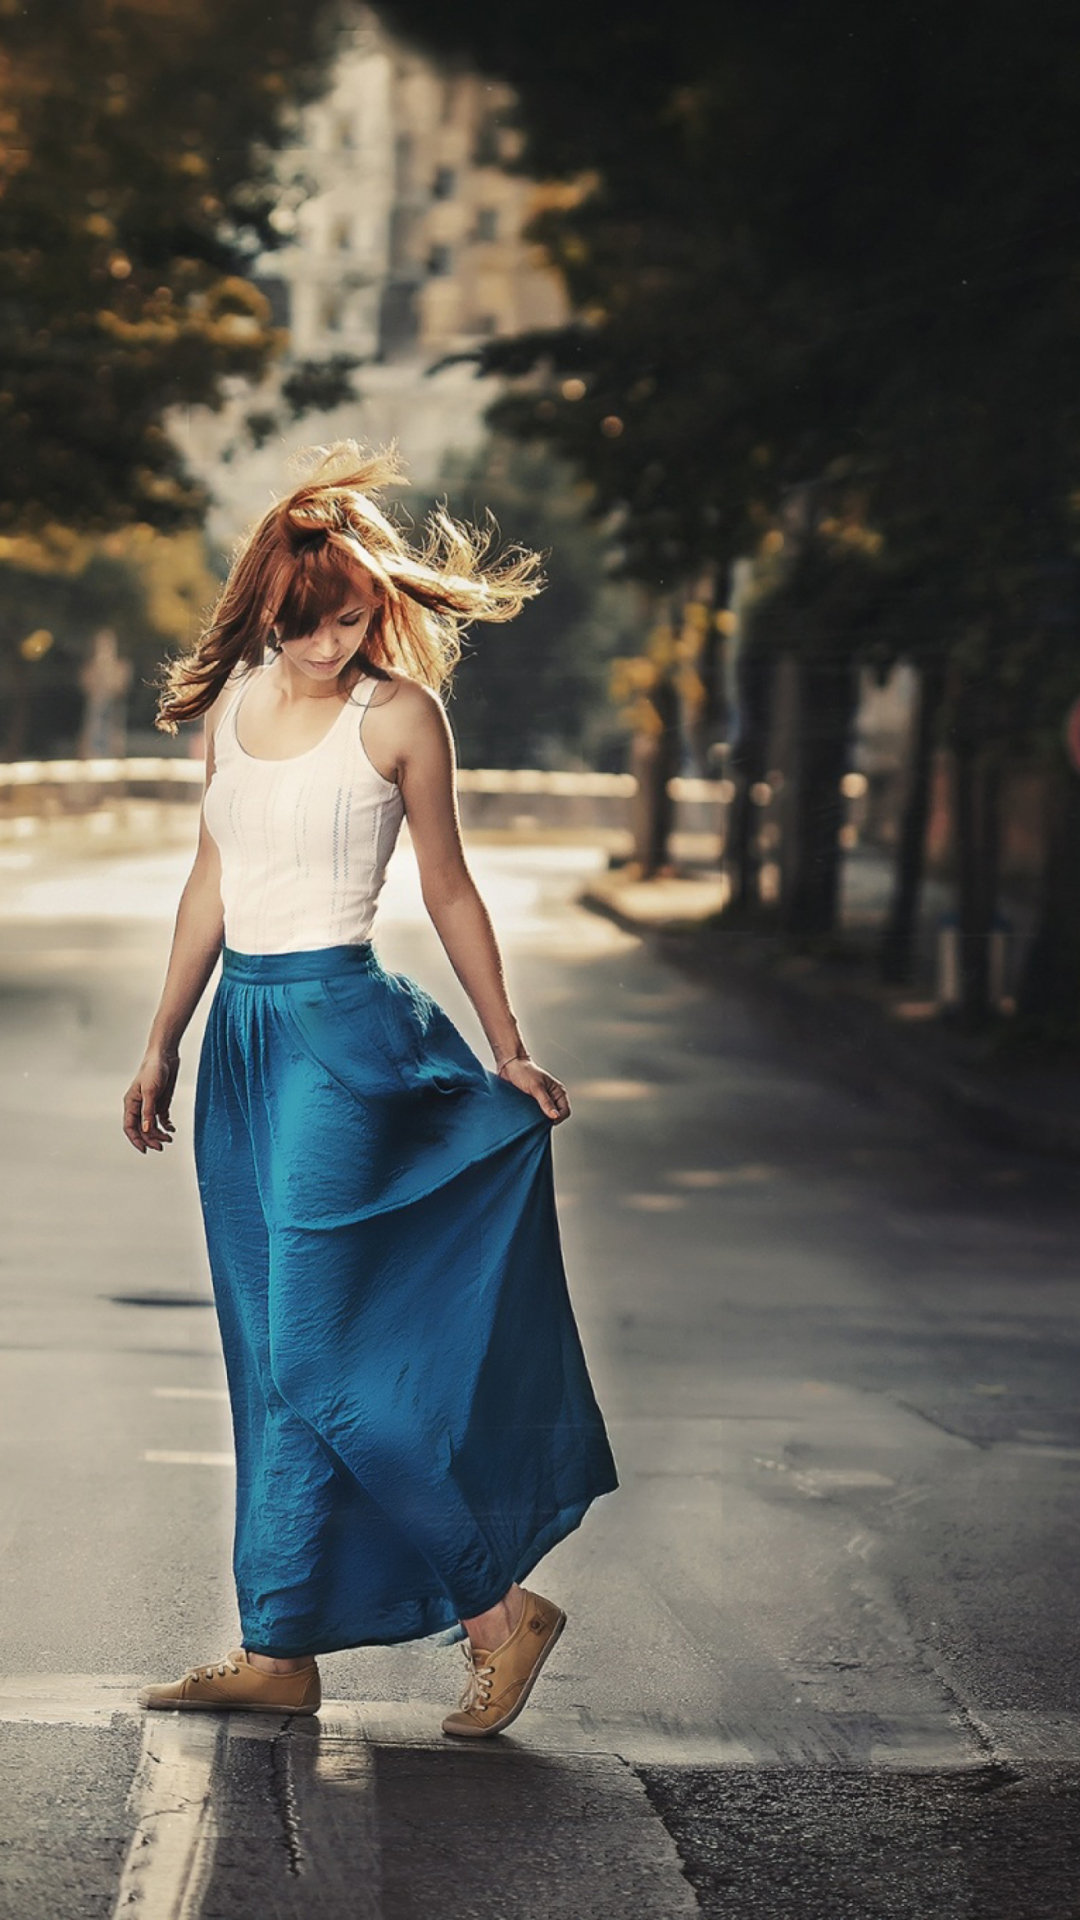 Das Girl In Long Blue Skirt On Street Wallpaper 1080x1920